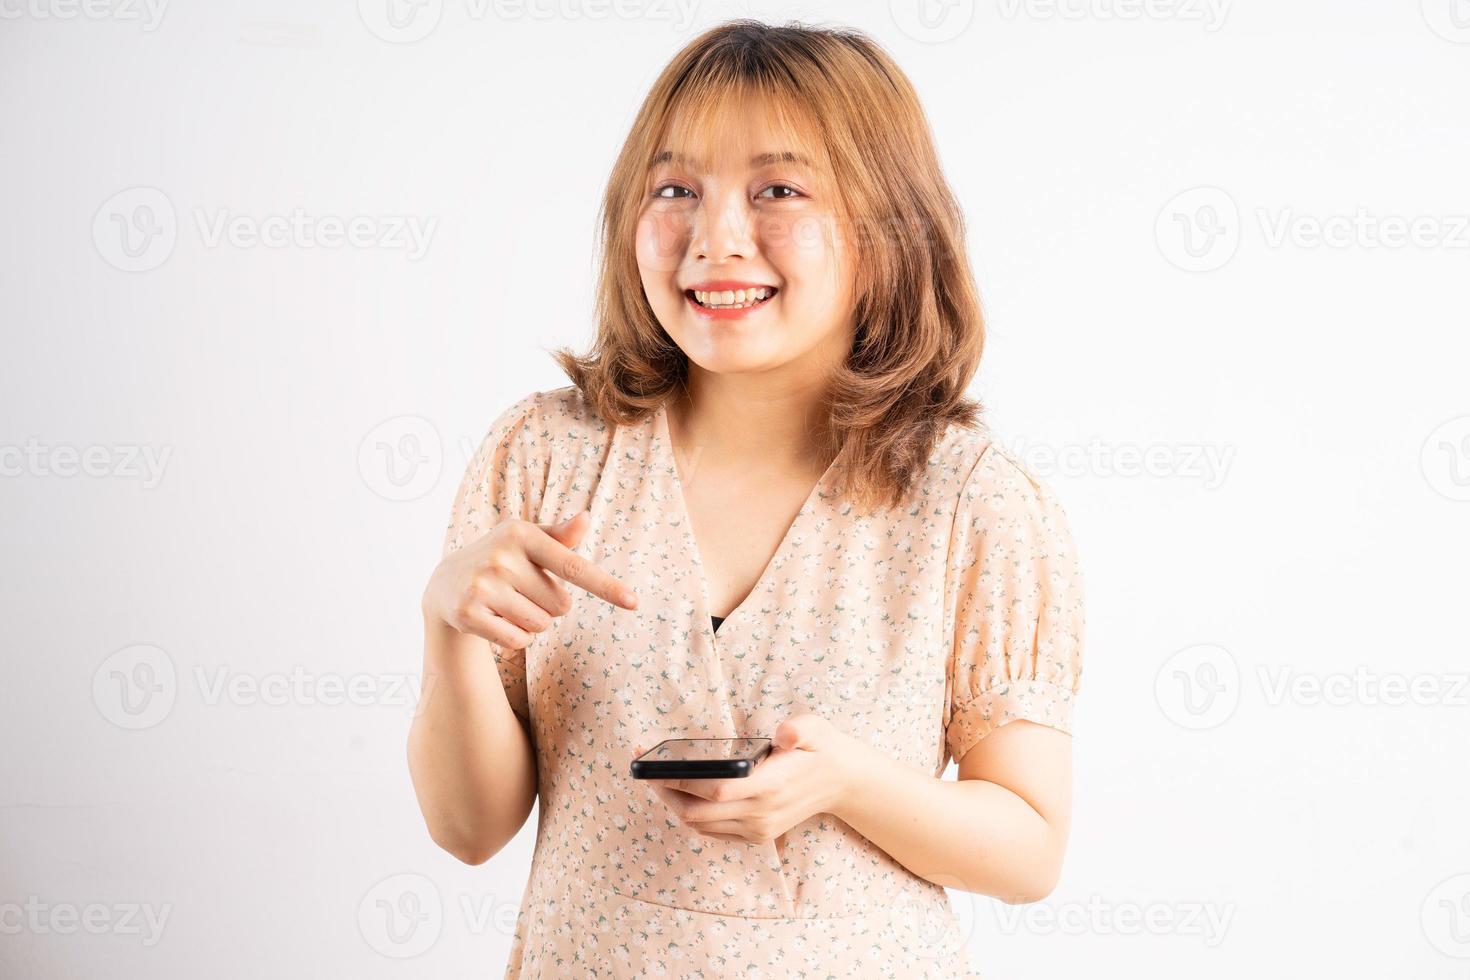 jong Aziatisch meisje met telefoon met uitdrukkingen, gebaren op de achtergrond foto